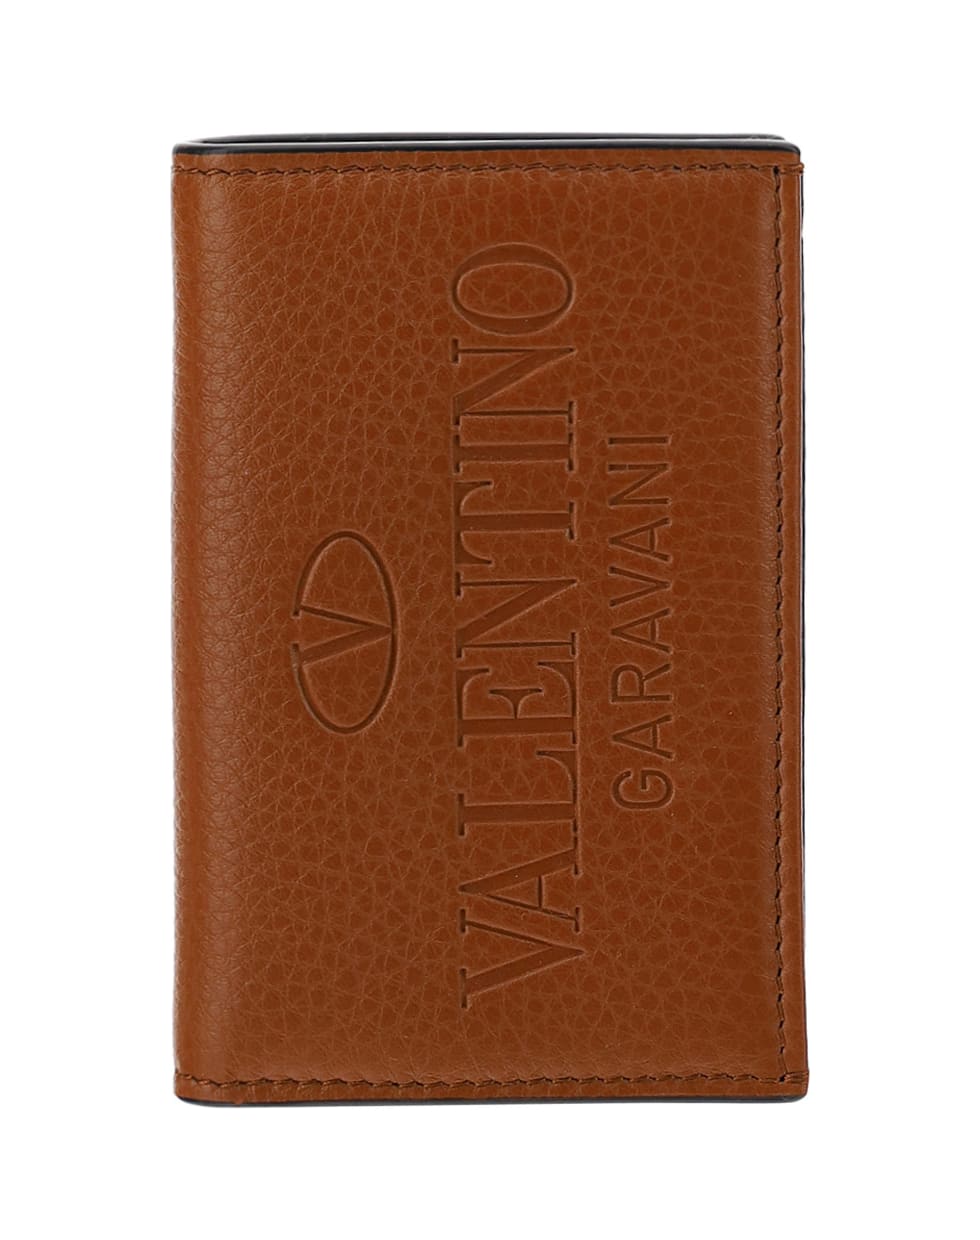 Valentino Garavani Card Holder - Selleria/antique brass